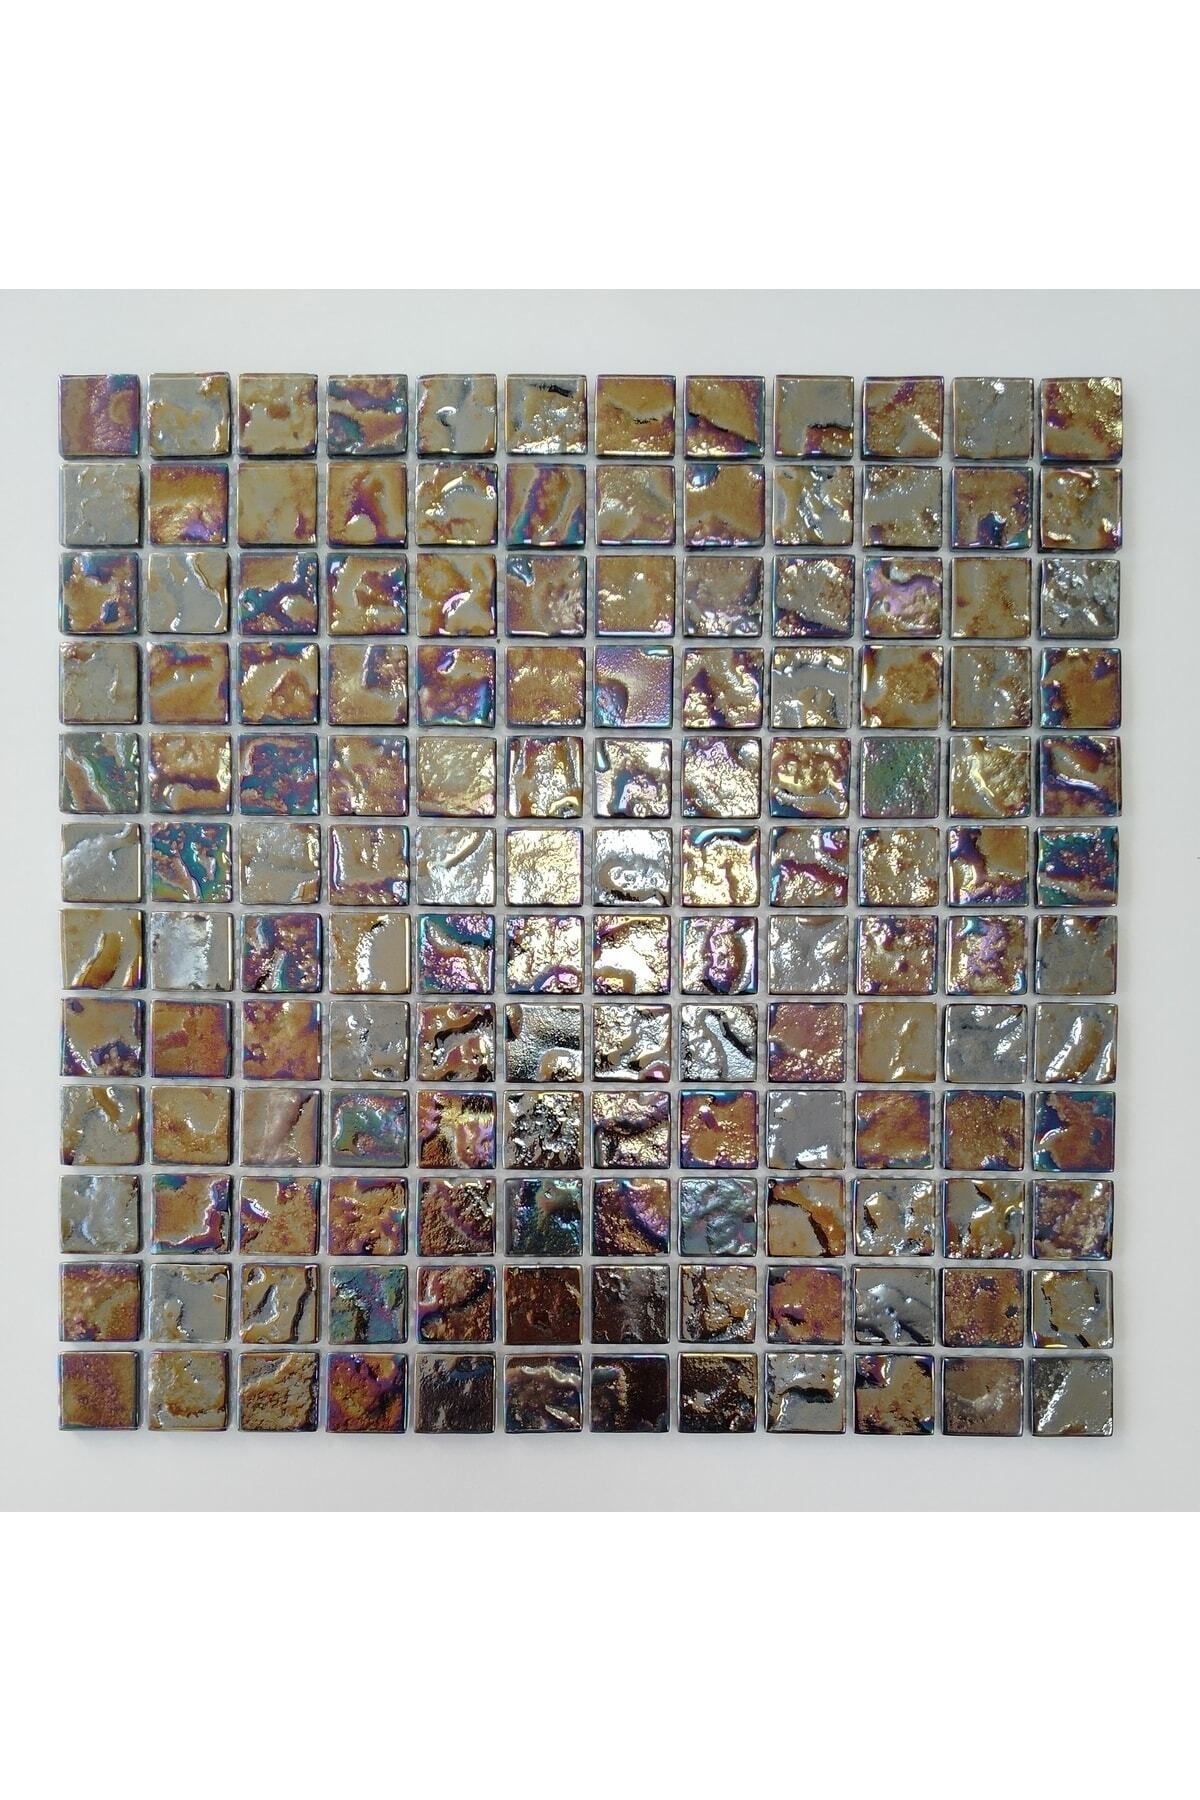 MozaiKristaL Yaşam Alanlarının Tüm Yüzeyleri Için 23x23x4 Mm Kristal Cam Mozaik ( 1 Koli = 1 M2 Fiyatıdır )